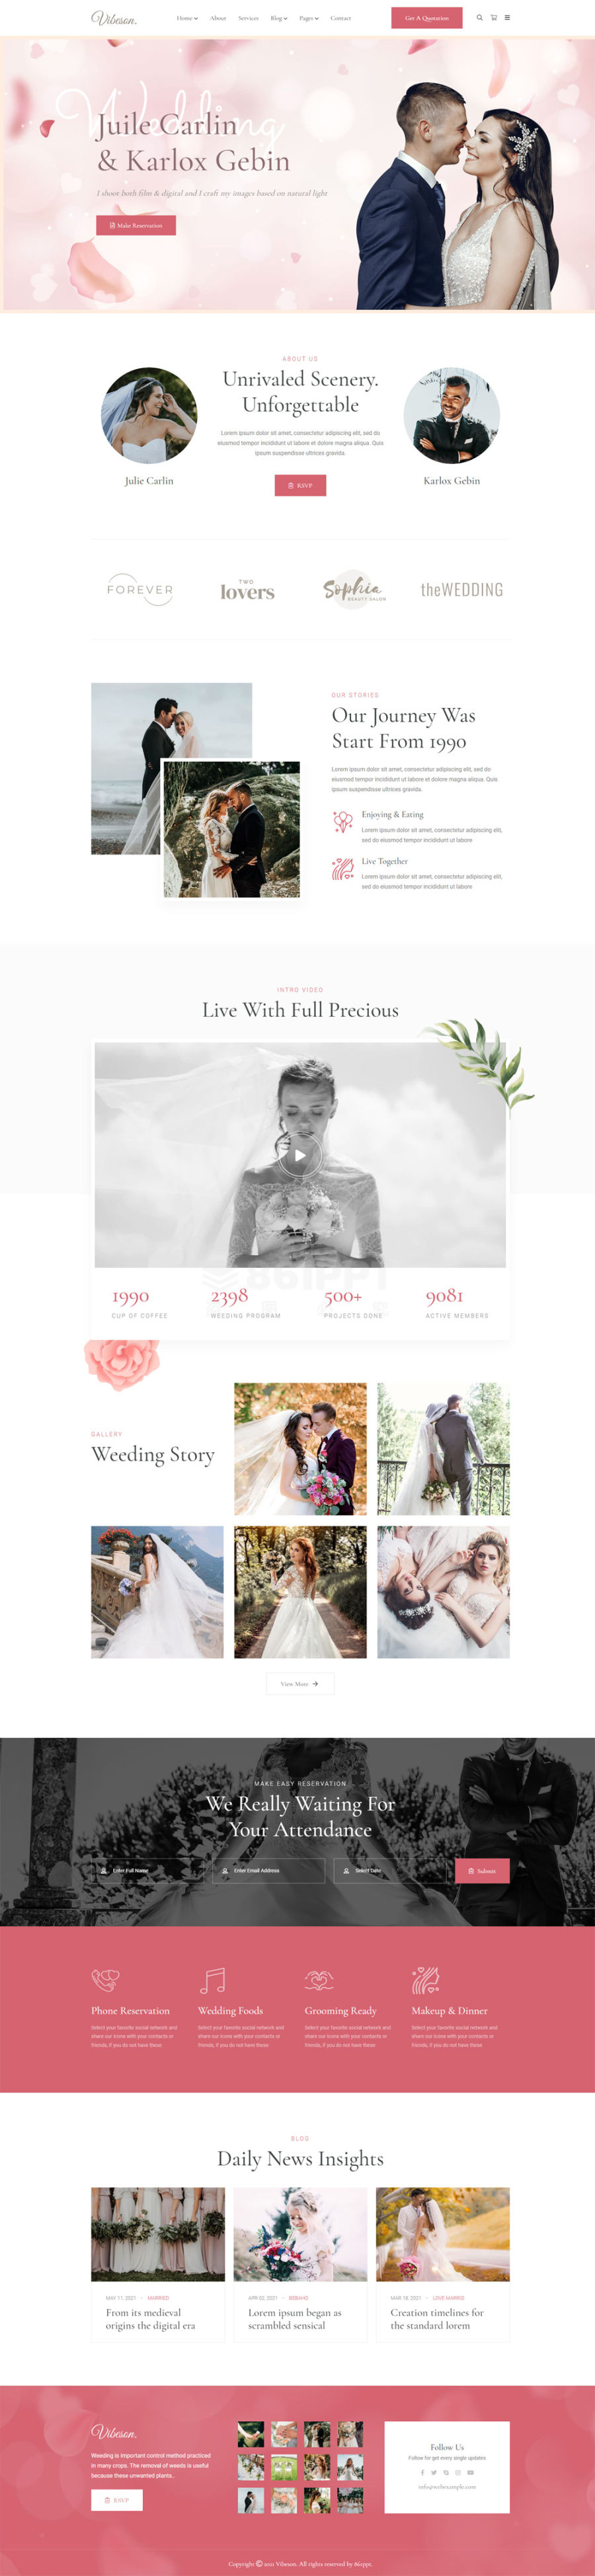 精美好看的婚纱摄影婚礼主题博客网页模板html